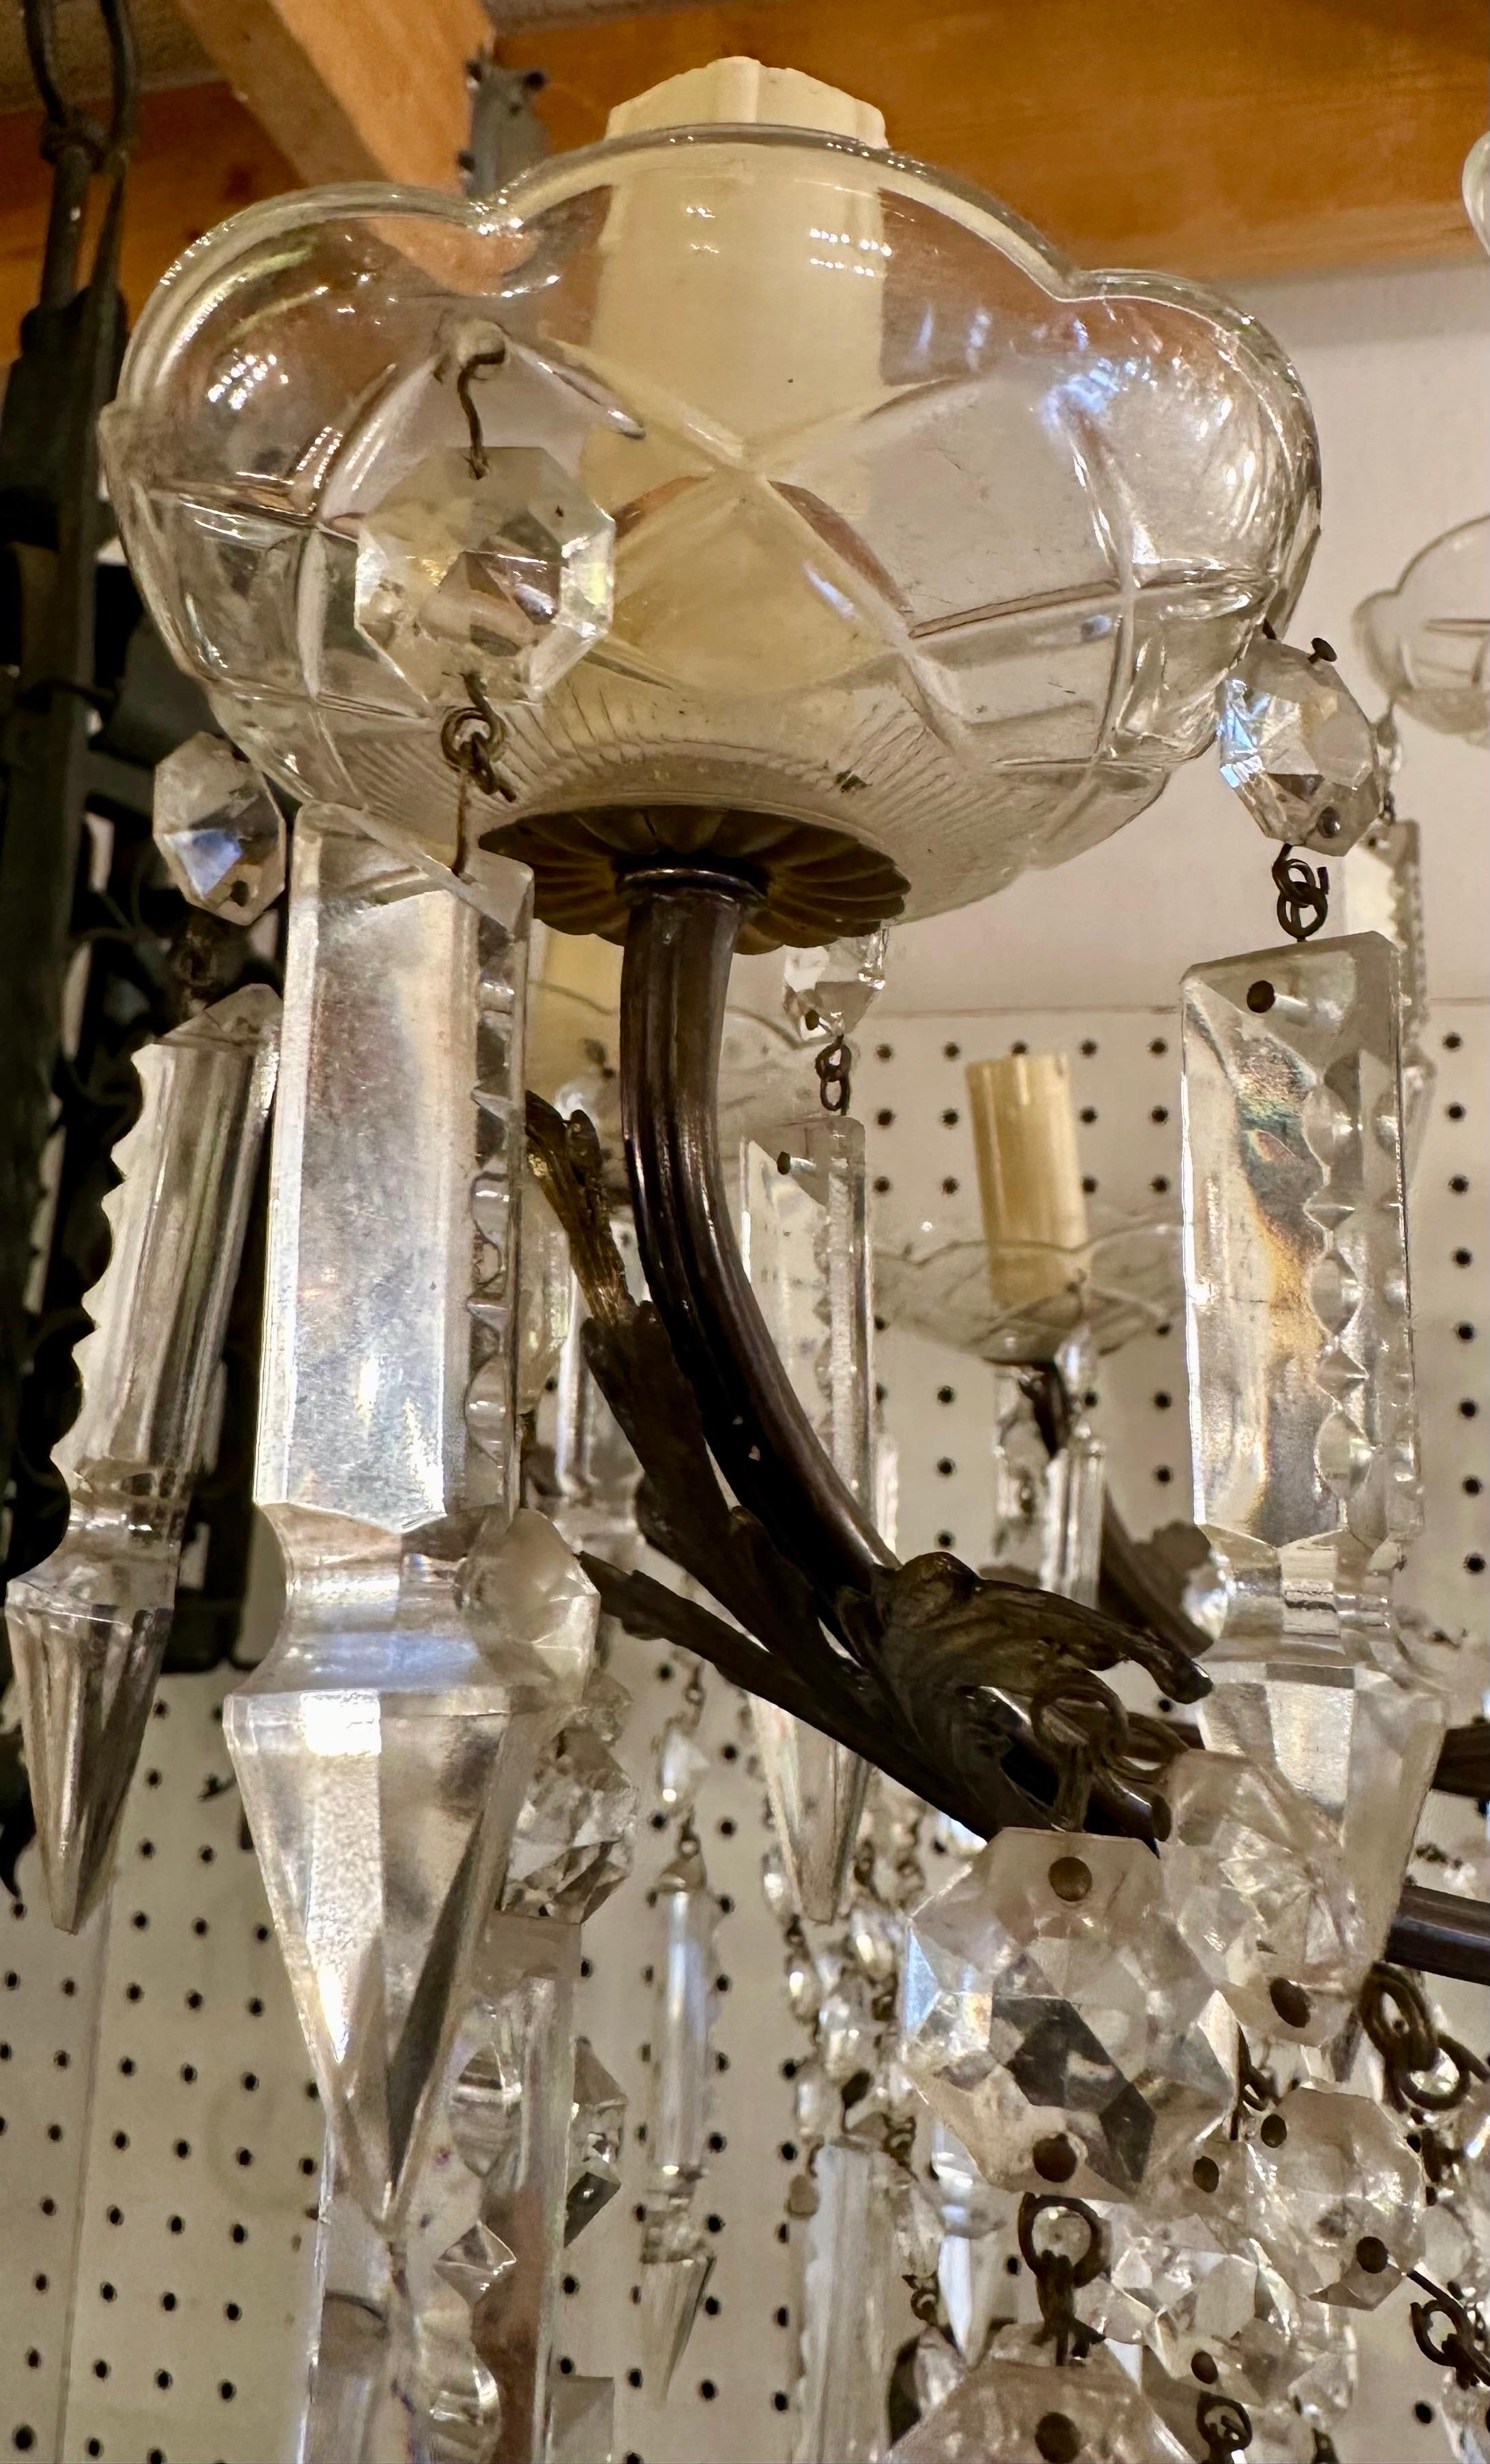 Wunderschöner Kristall- und Bronzekandelaber mit einer Vielzahl von Lichtern! Das wäre viel zu schön über einem repräsentativen Esstisch oder sogar als Blickfang in einem Badezimmer in Ihrem Anwesen! Kontaktieren Sie uns noch heute für den Kauf! 